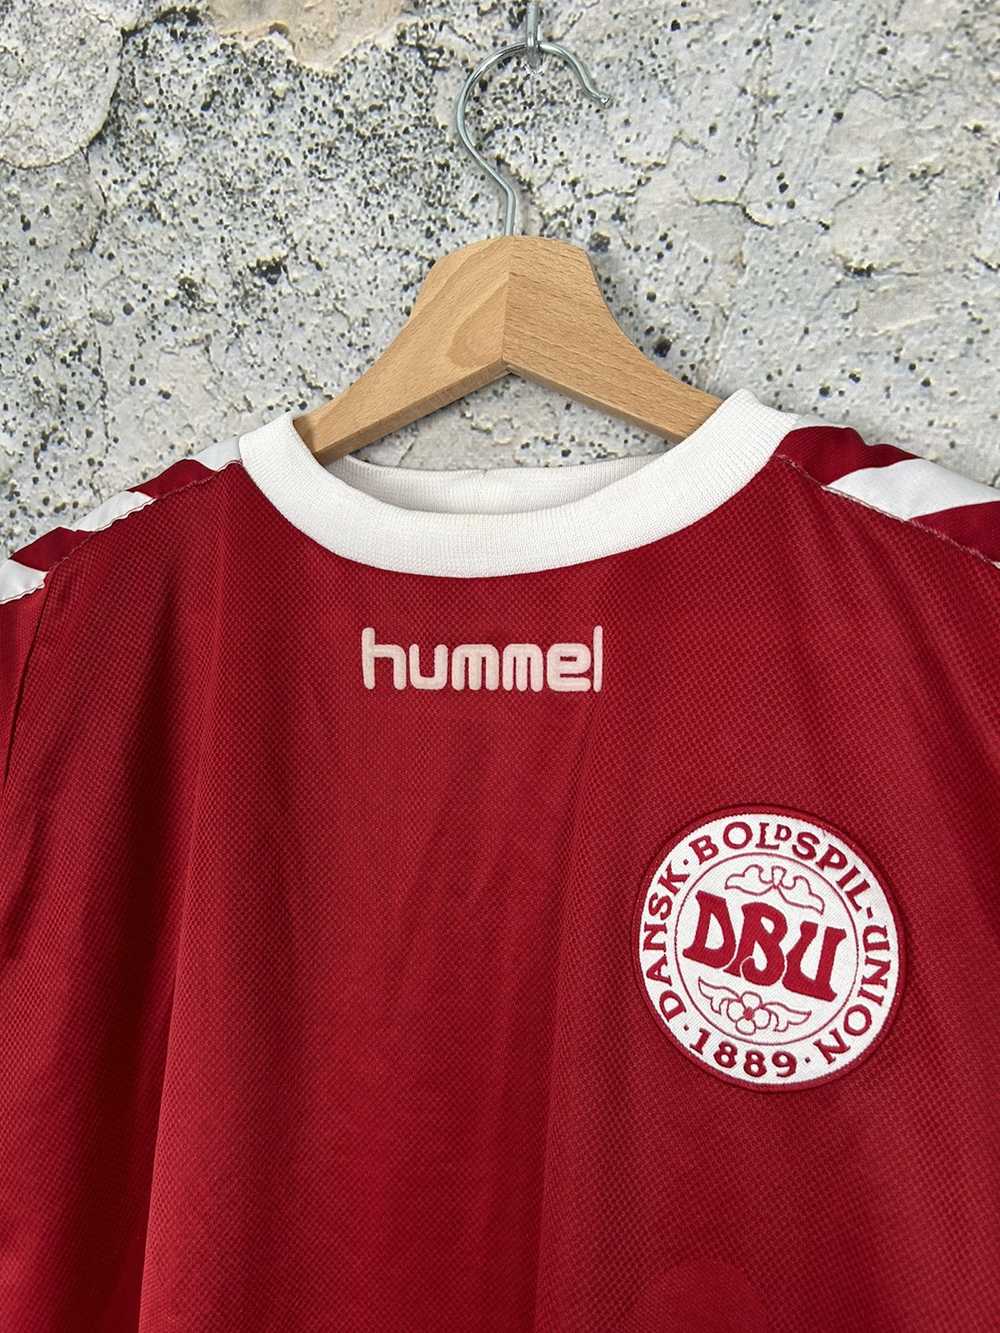 Hummel × Soccer Jersey × Vintage Vintage Denmark … - image 3